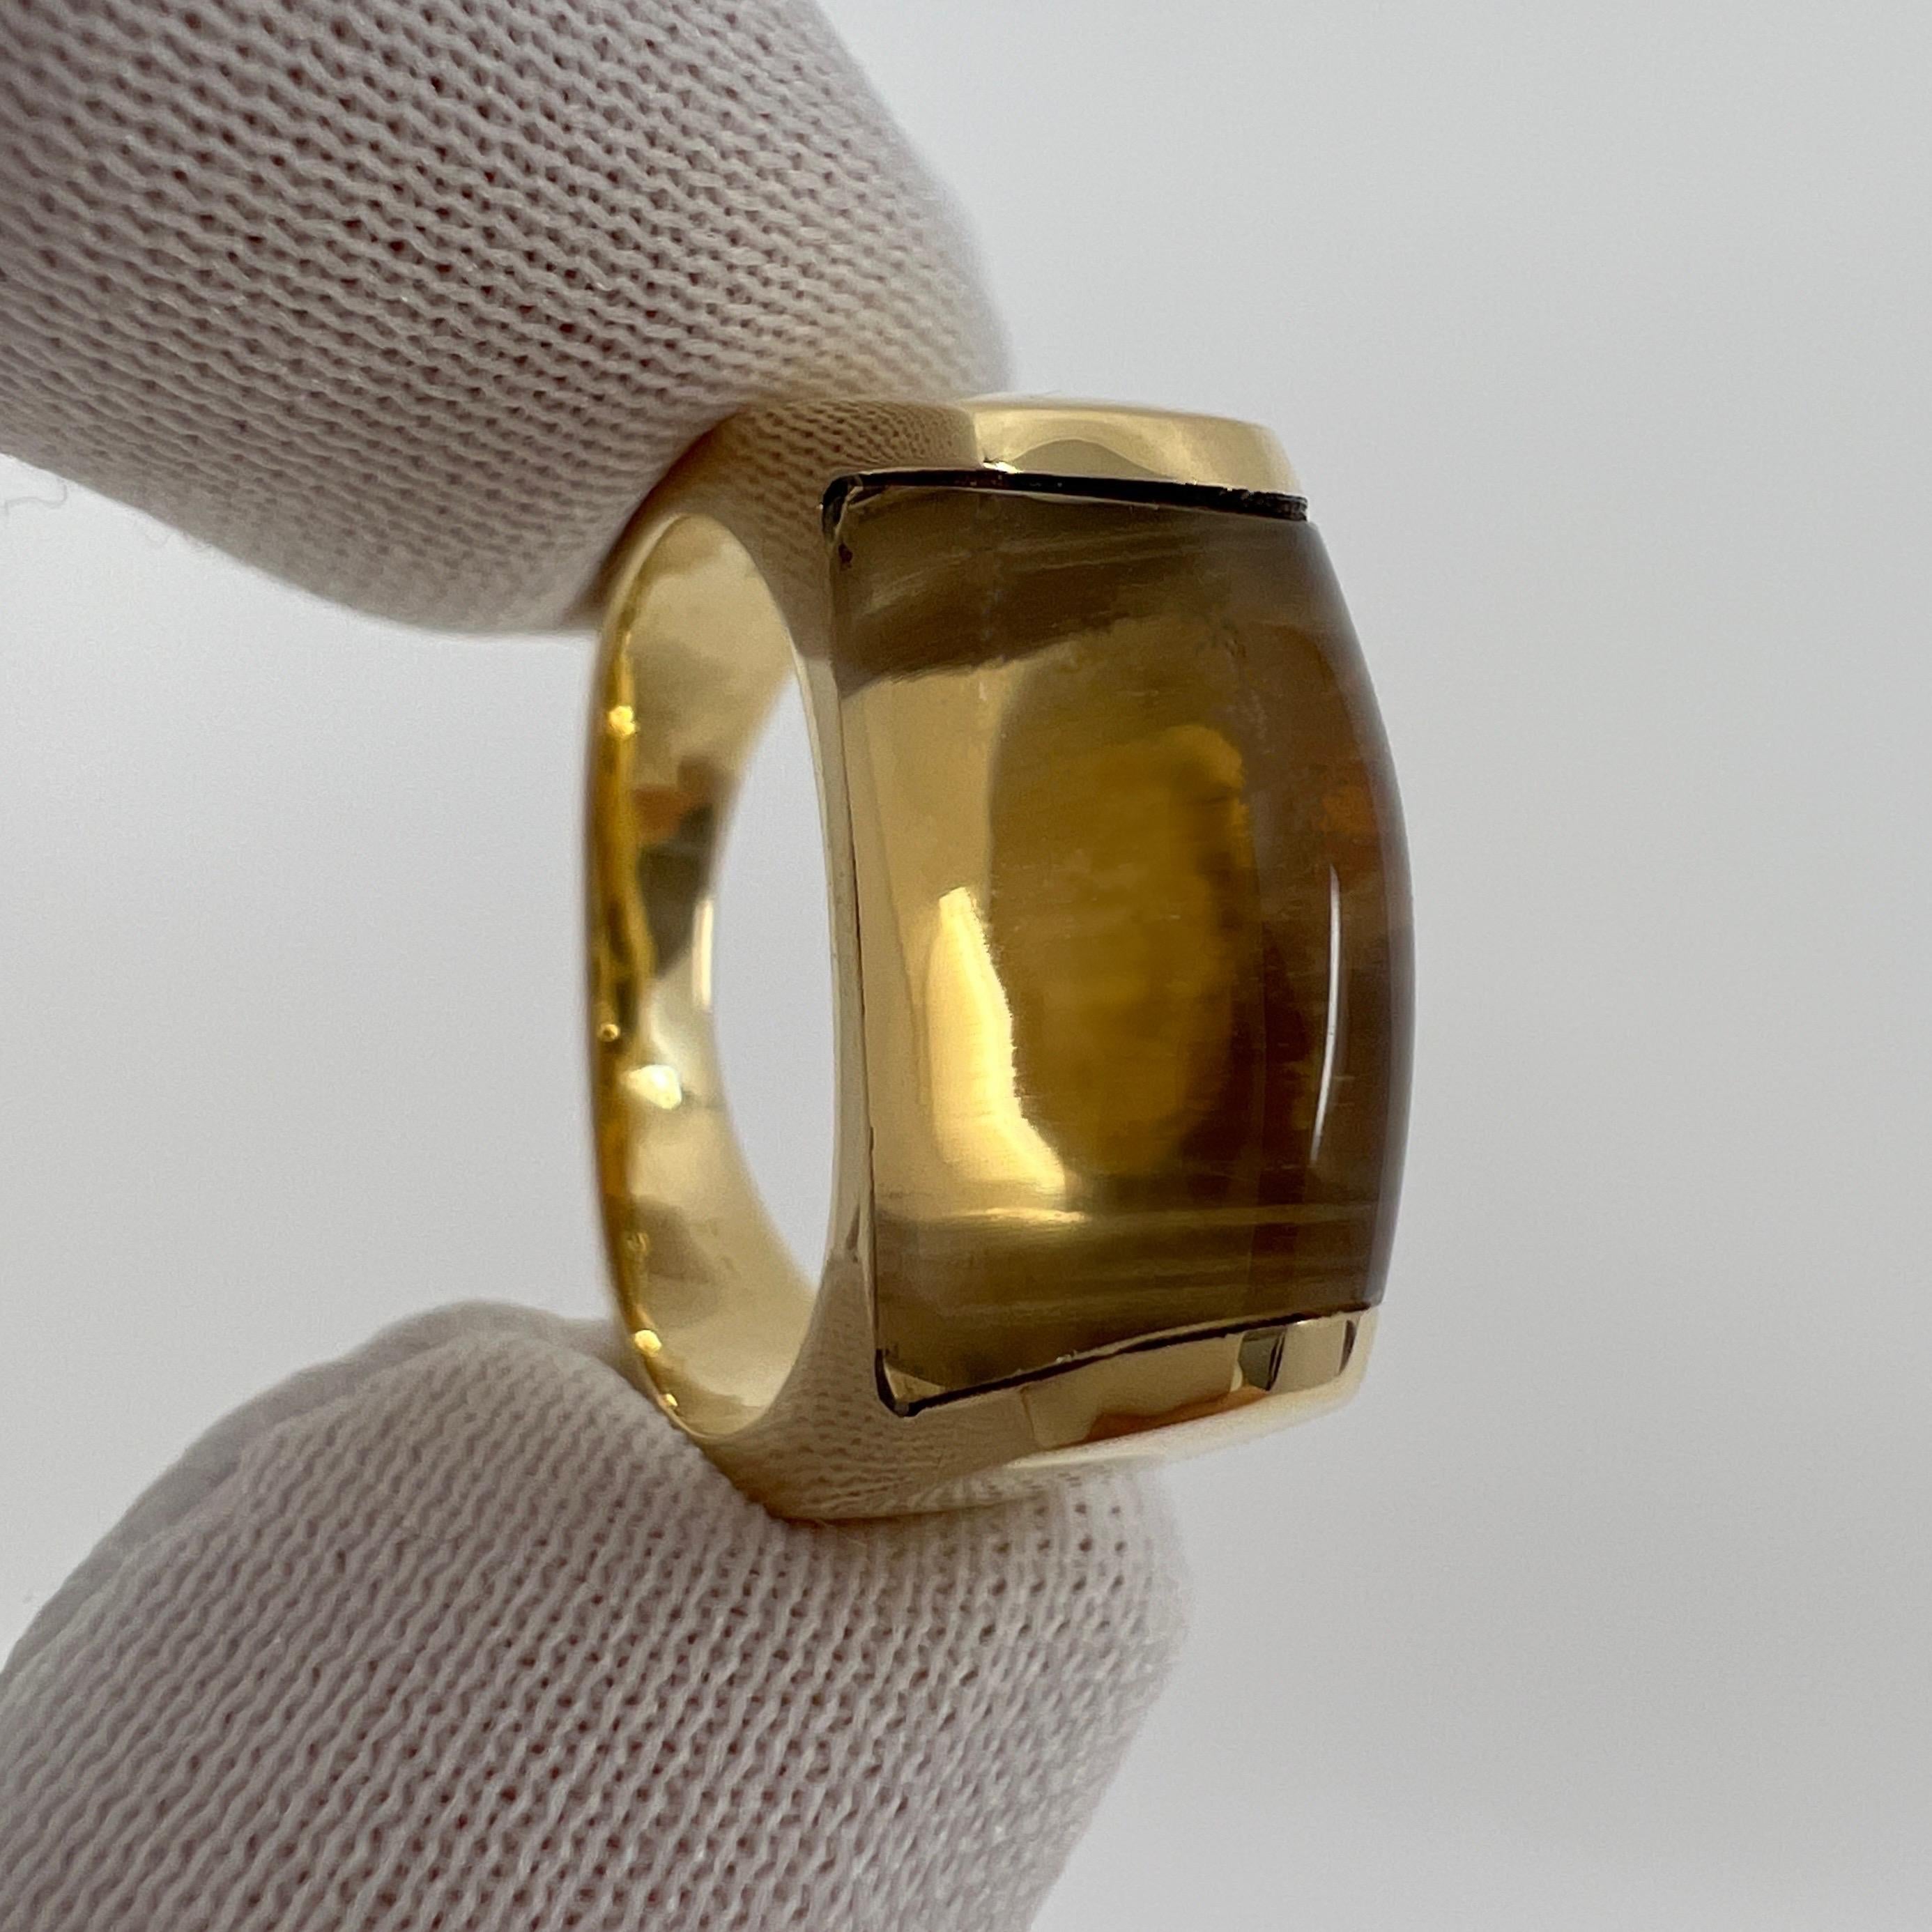 Rare Bvlgari Bulgari Tronchetto 18k Yellow Gold Yellow Citrine Ring with Box For Sale 4